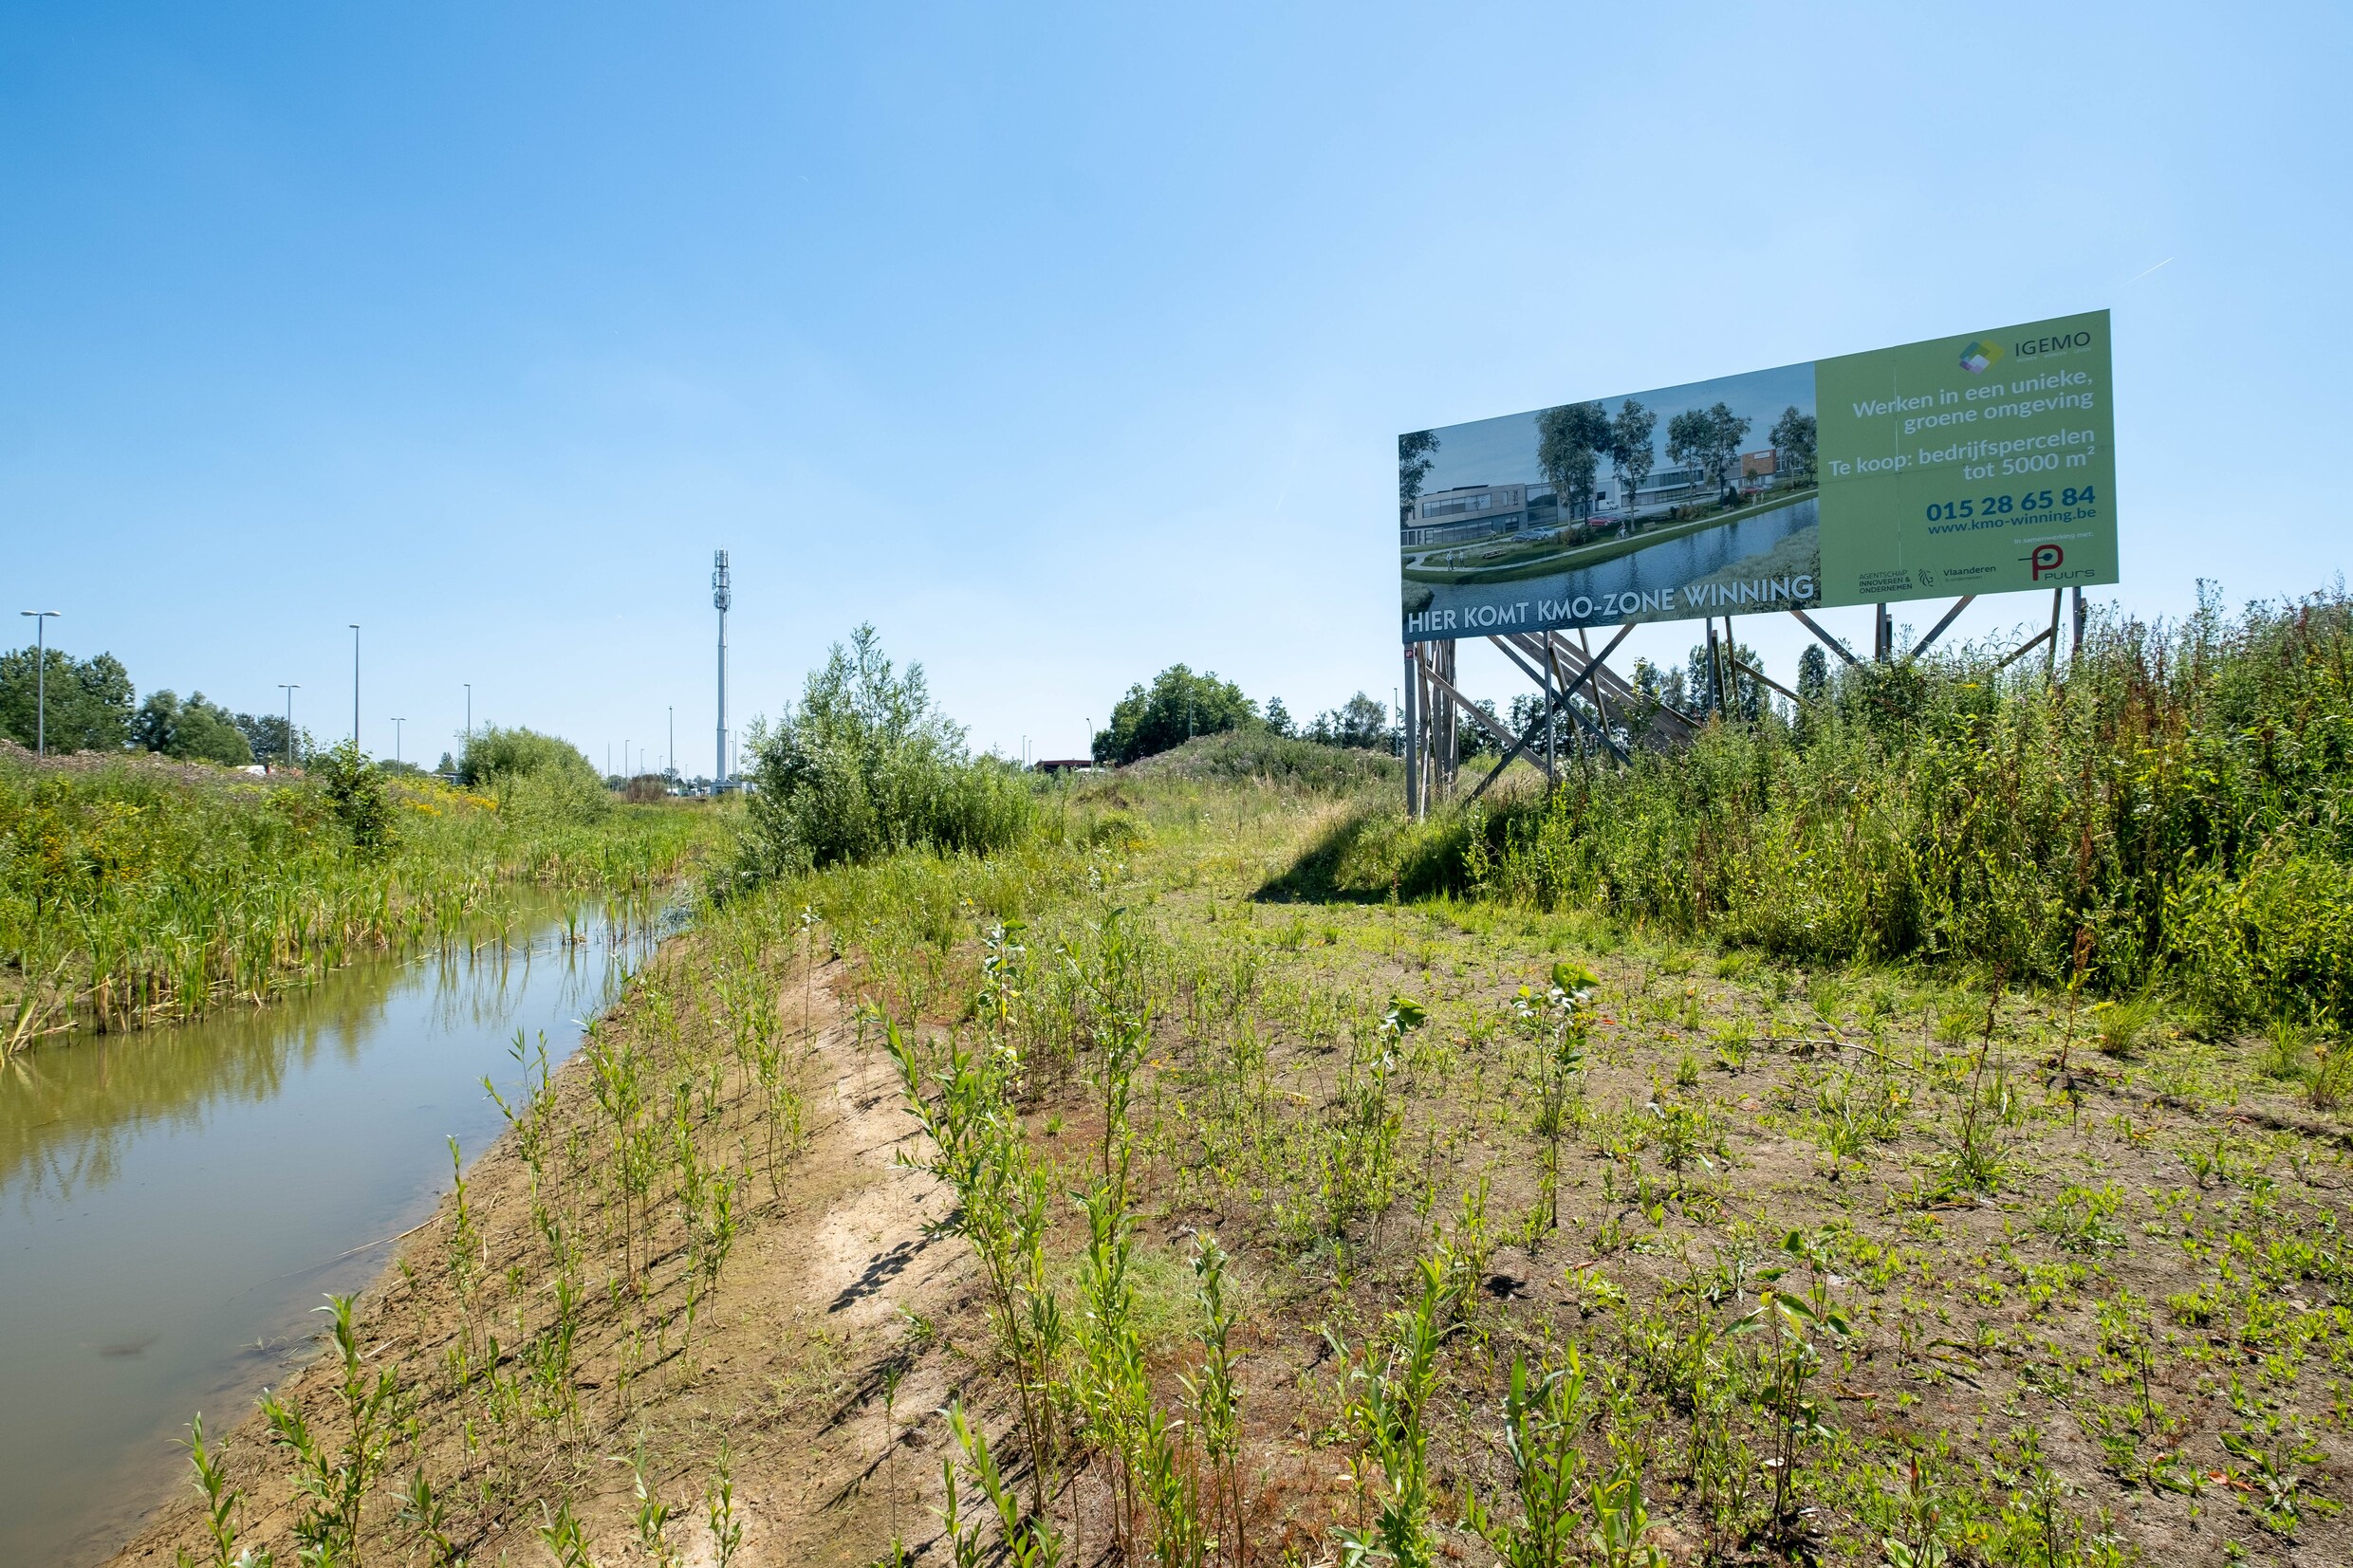 Betonnering Vlaams landschap neemt toe volgens Groen: ‘Betonversnelling in plaats van betonstop’